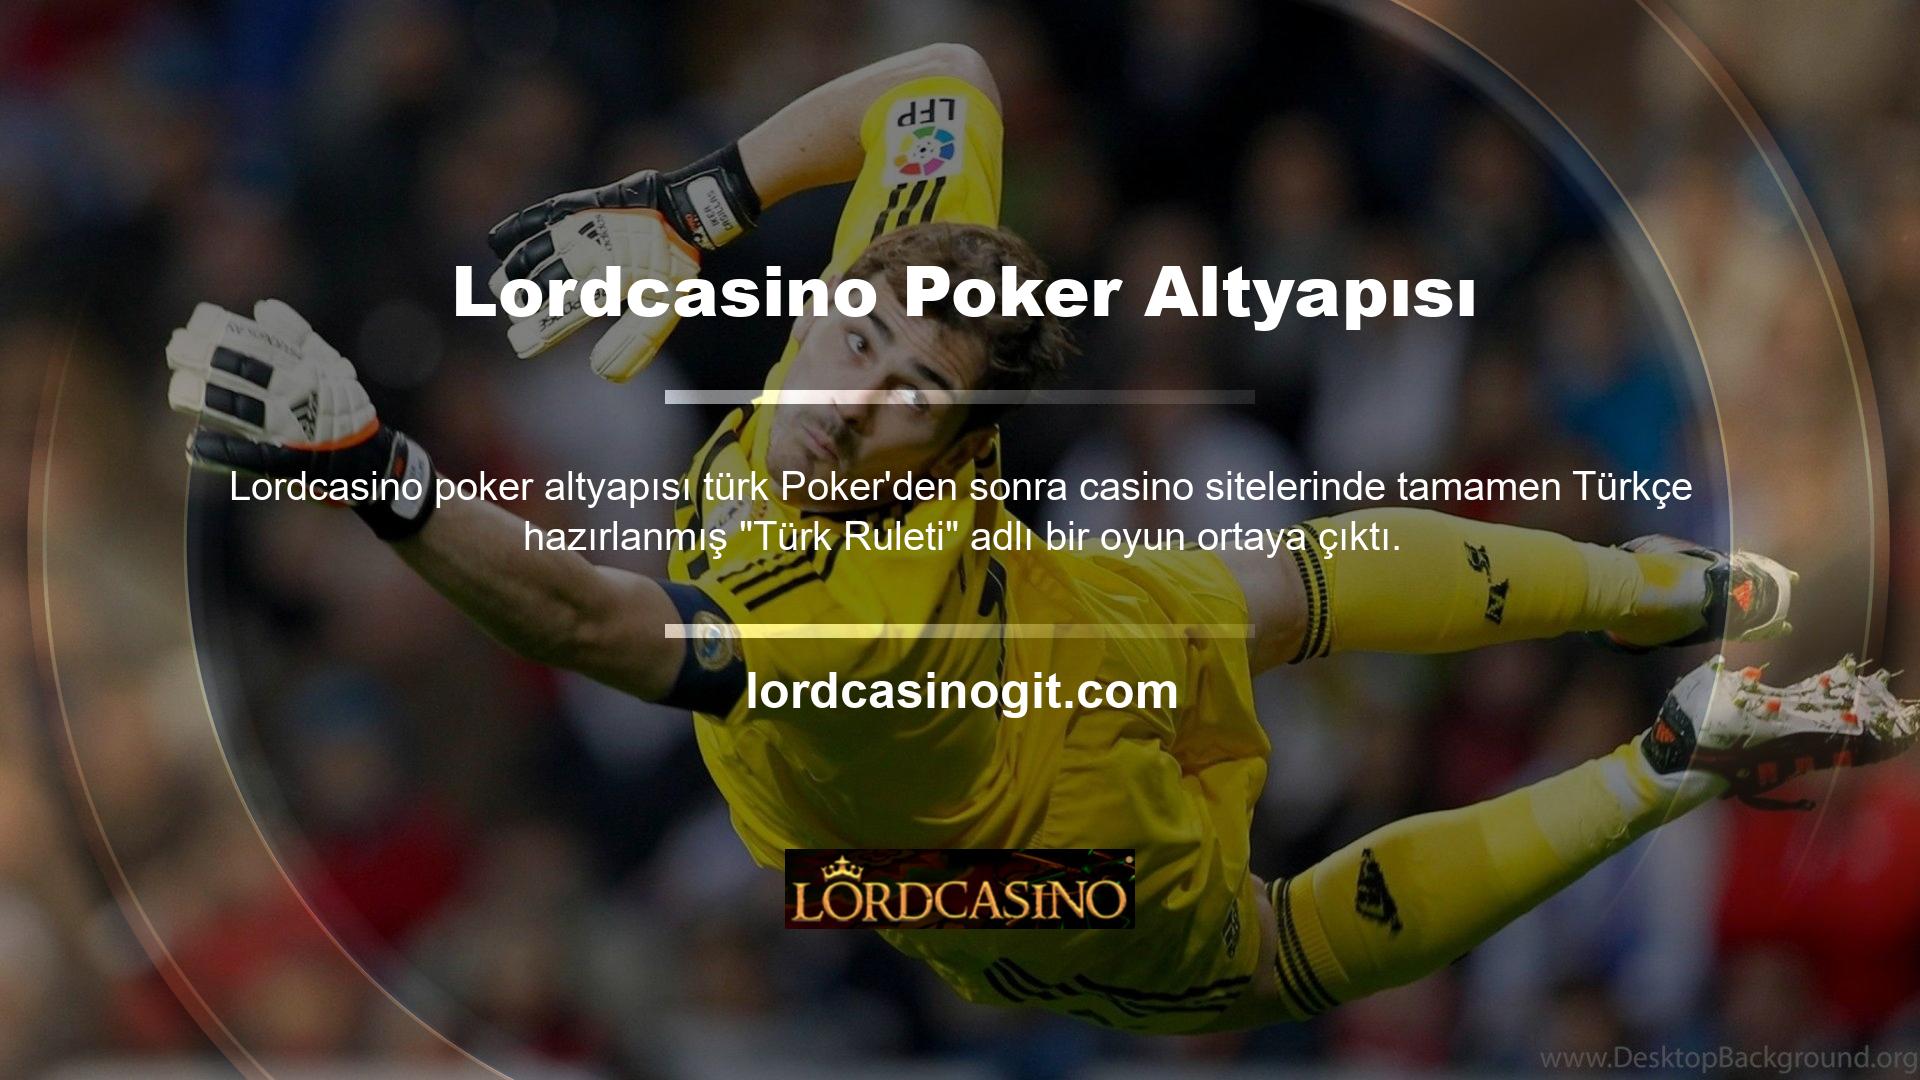 Lordcasino Türk Rulet Poker altyapısını hemen deneyin ve görsele tıklayarak Lordcasino ücretsiz üye olun